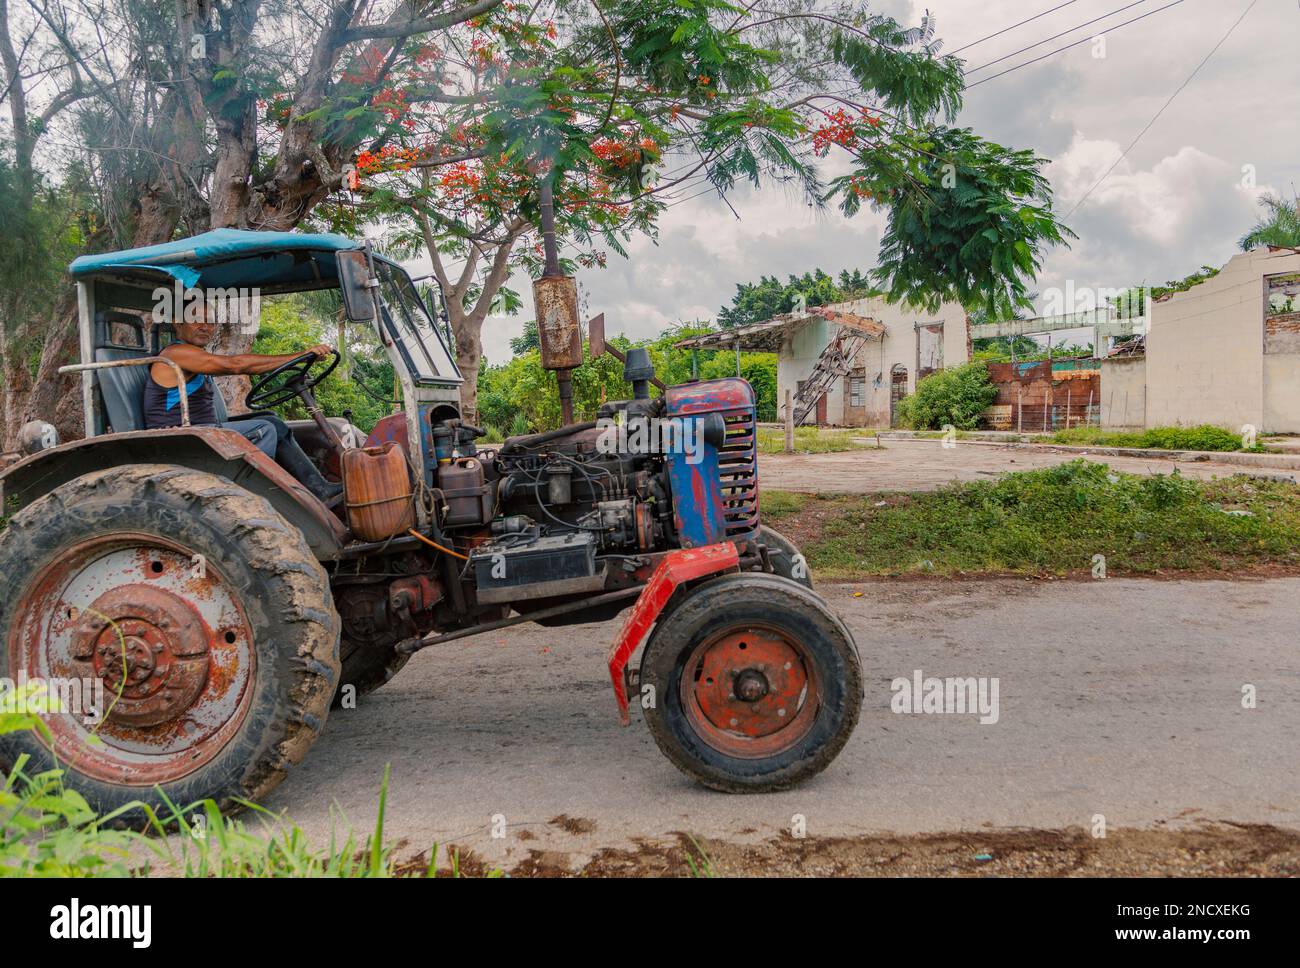 Augusto César Sandino, Artemisa, Cuba. 11th de julio de 2019. Agricultor conduciendo un tractor en una carretera con un edificio en ruinas en el fondo, en una ciudad rural. Foto de stock